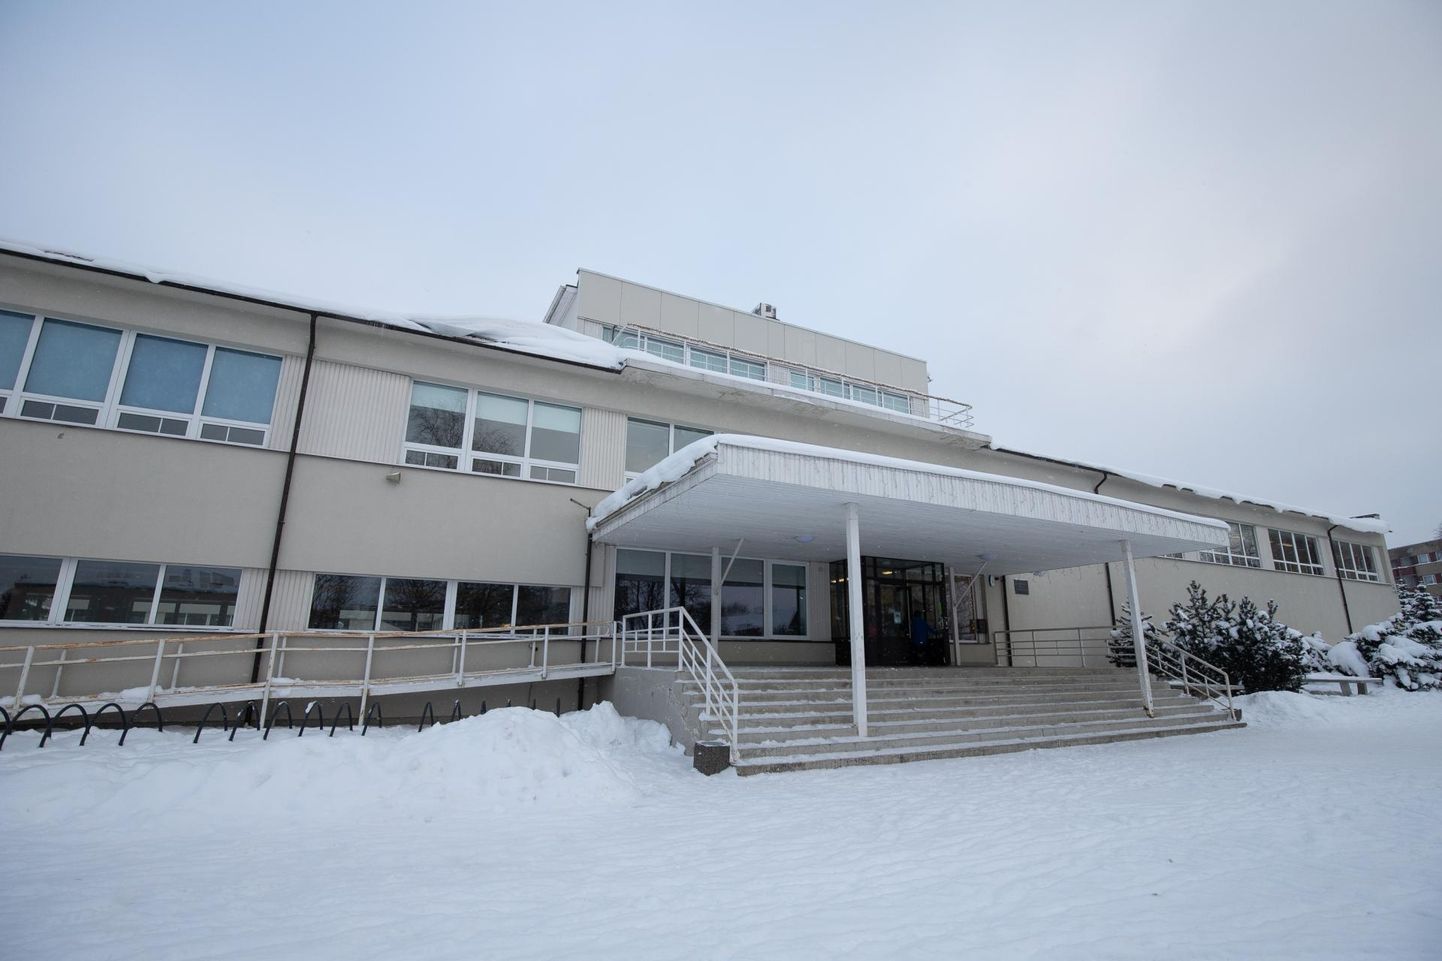 Rakvere reaalgümnaasium on Lääne-Viru maakonna suurim üldhariduskool, kus õpib peaaegu 900 õpilast.